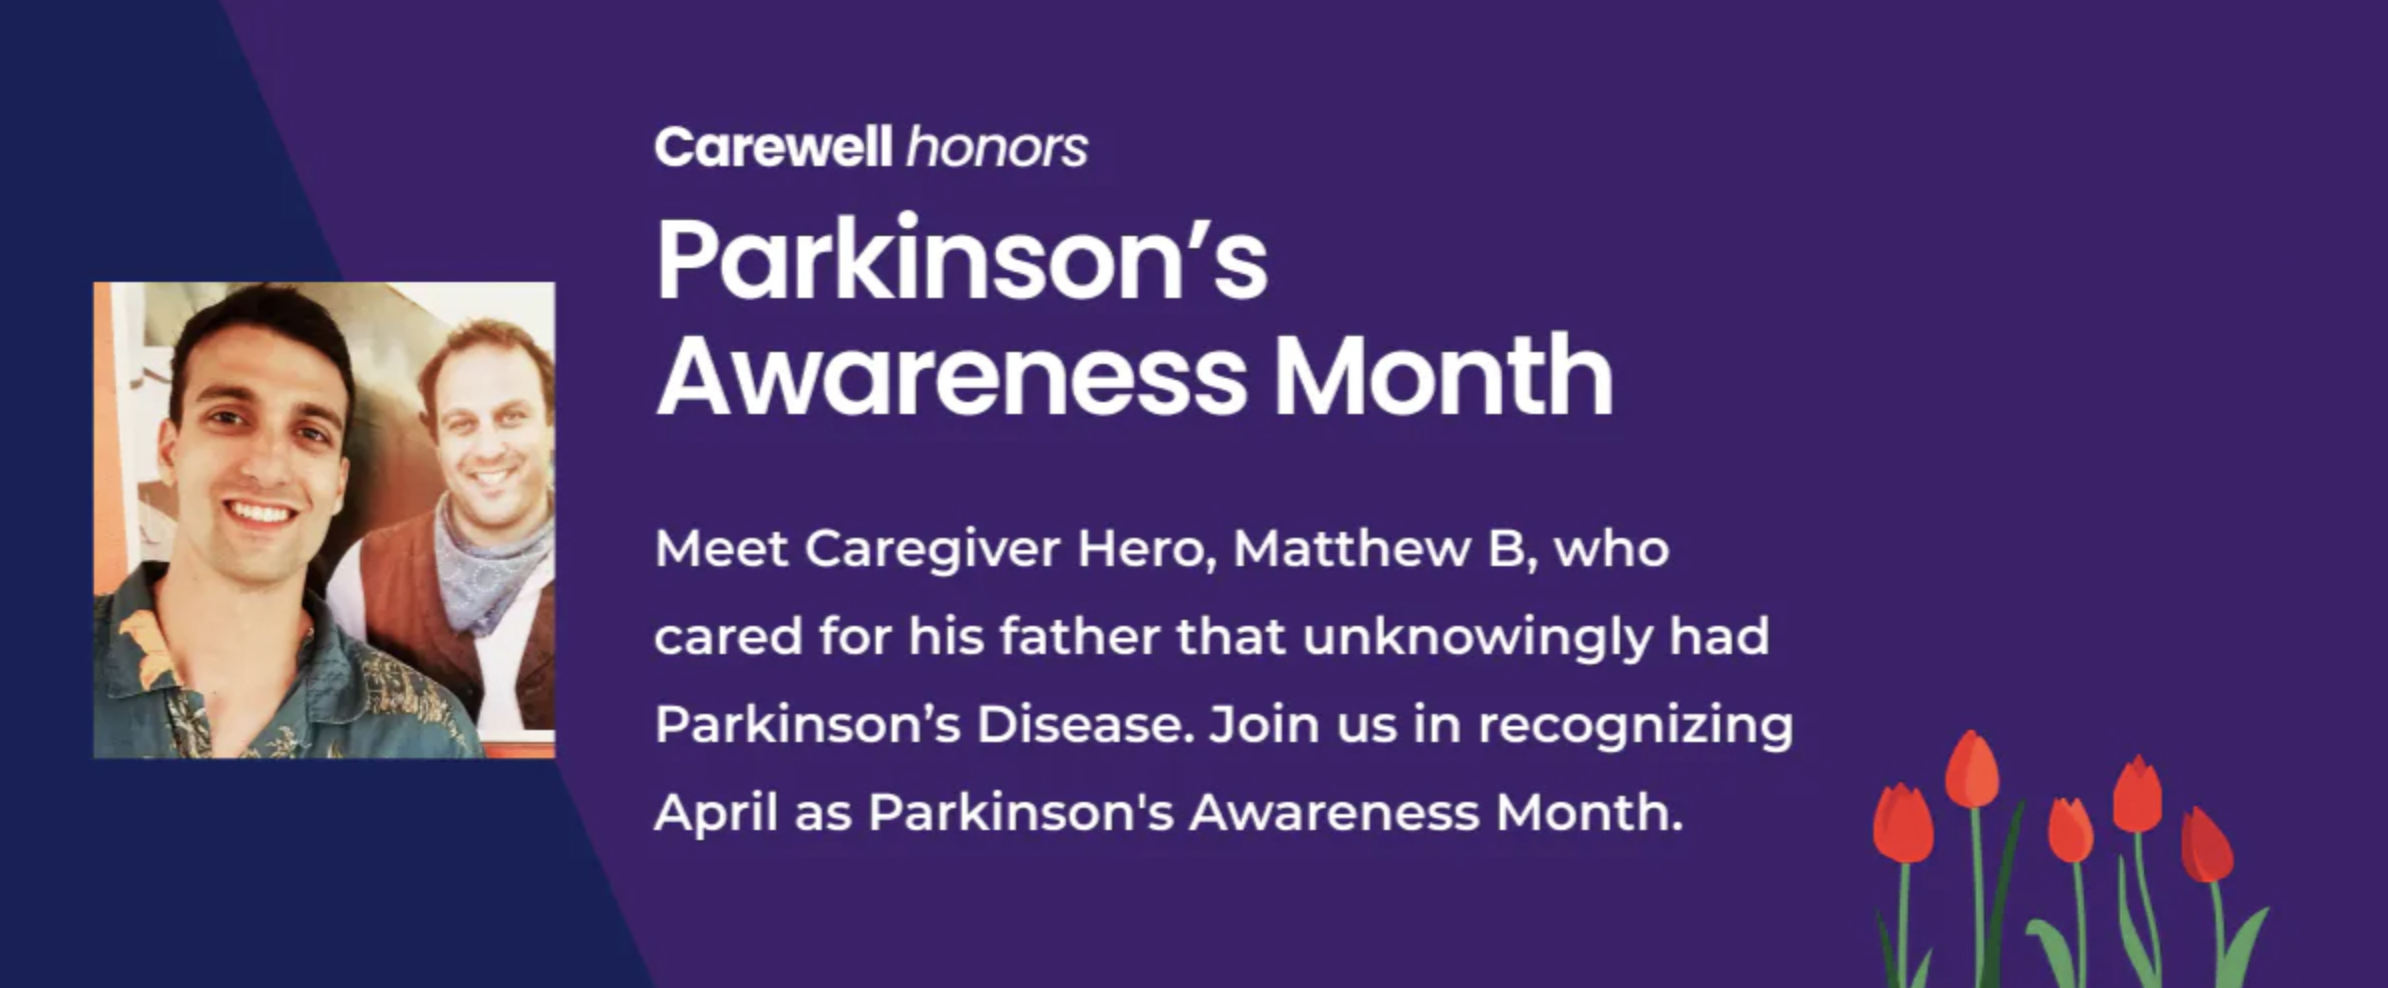 Parkinson's Awareness Month - Meet Matthew